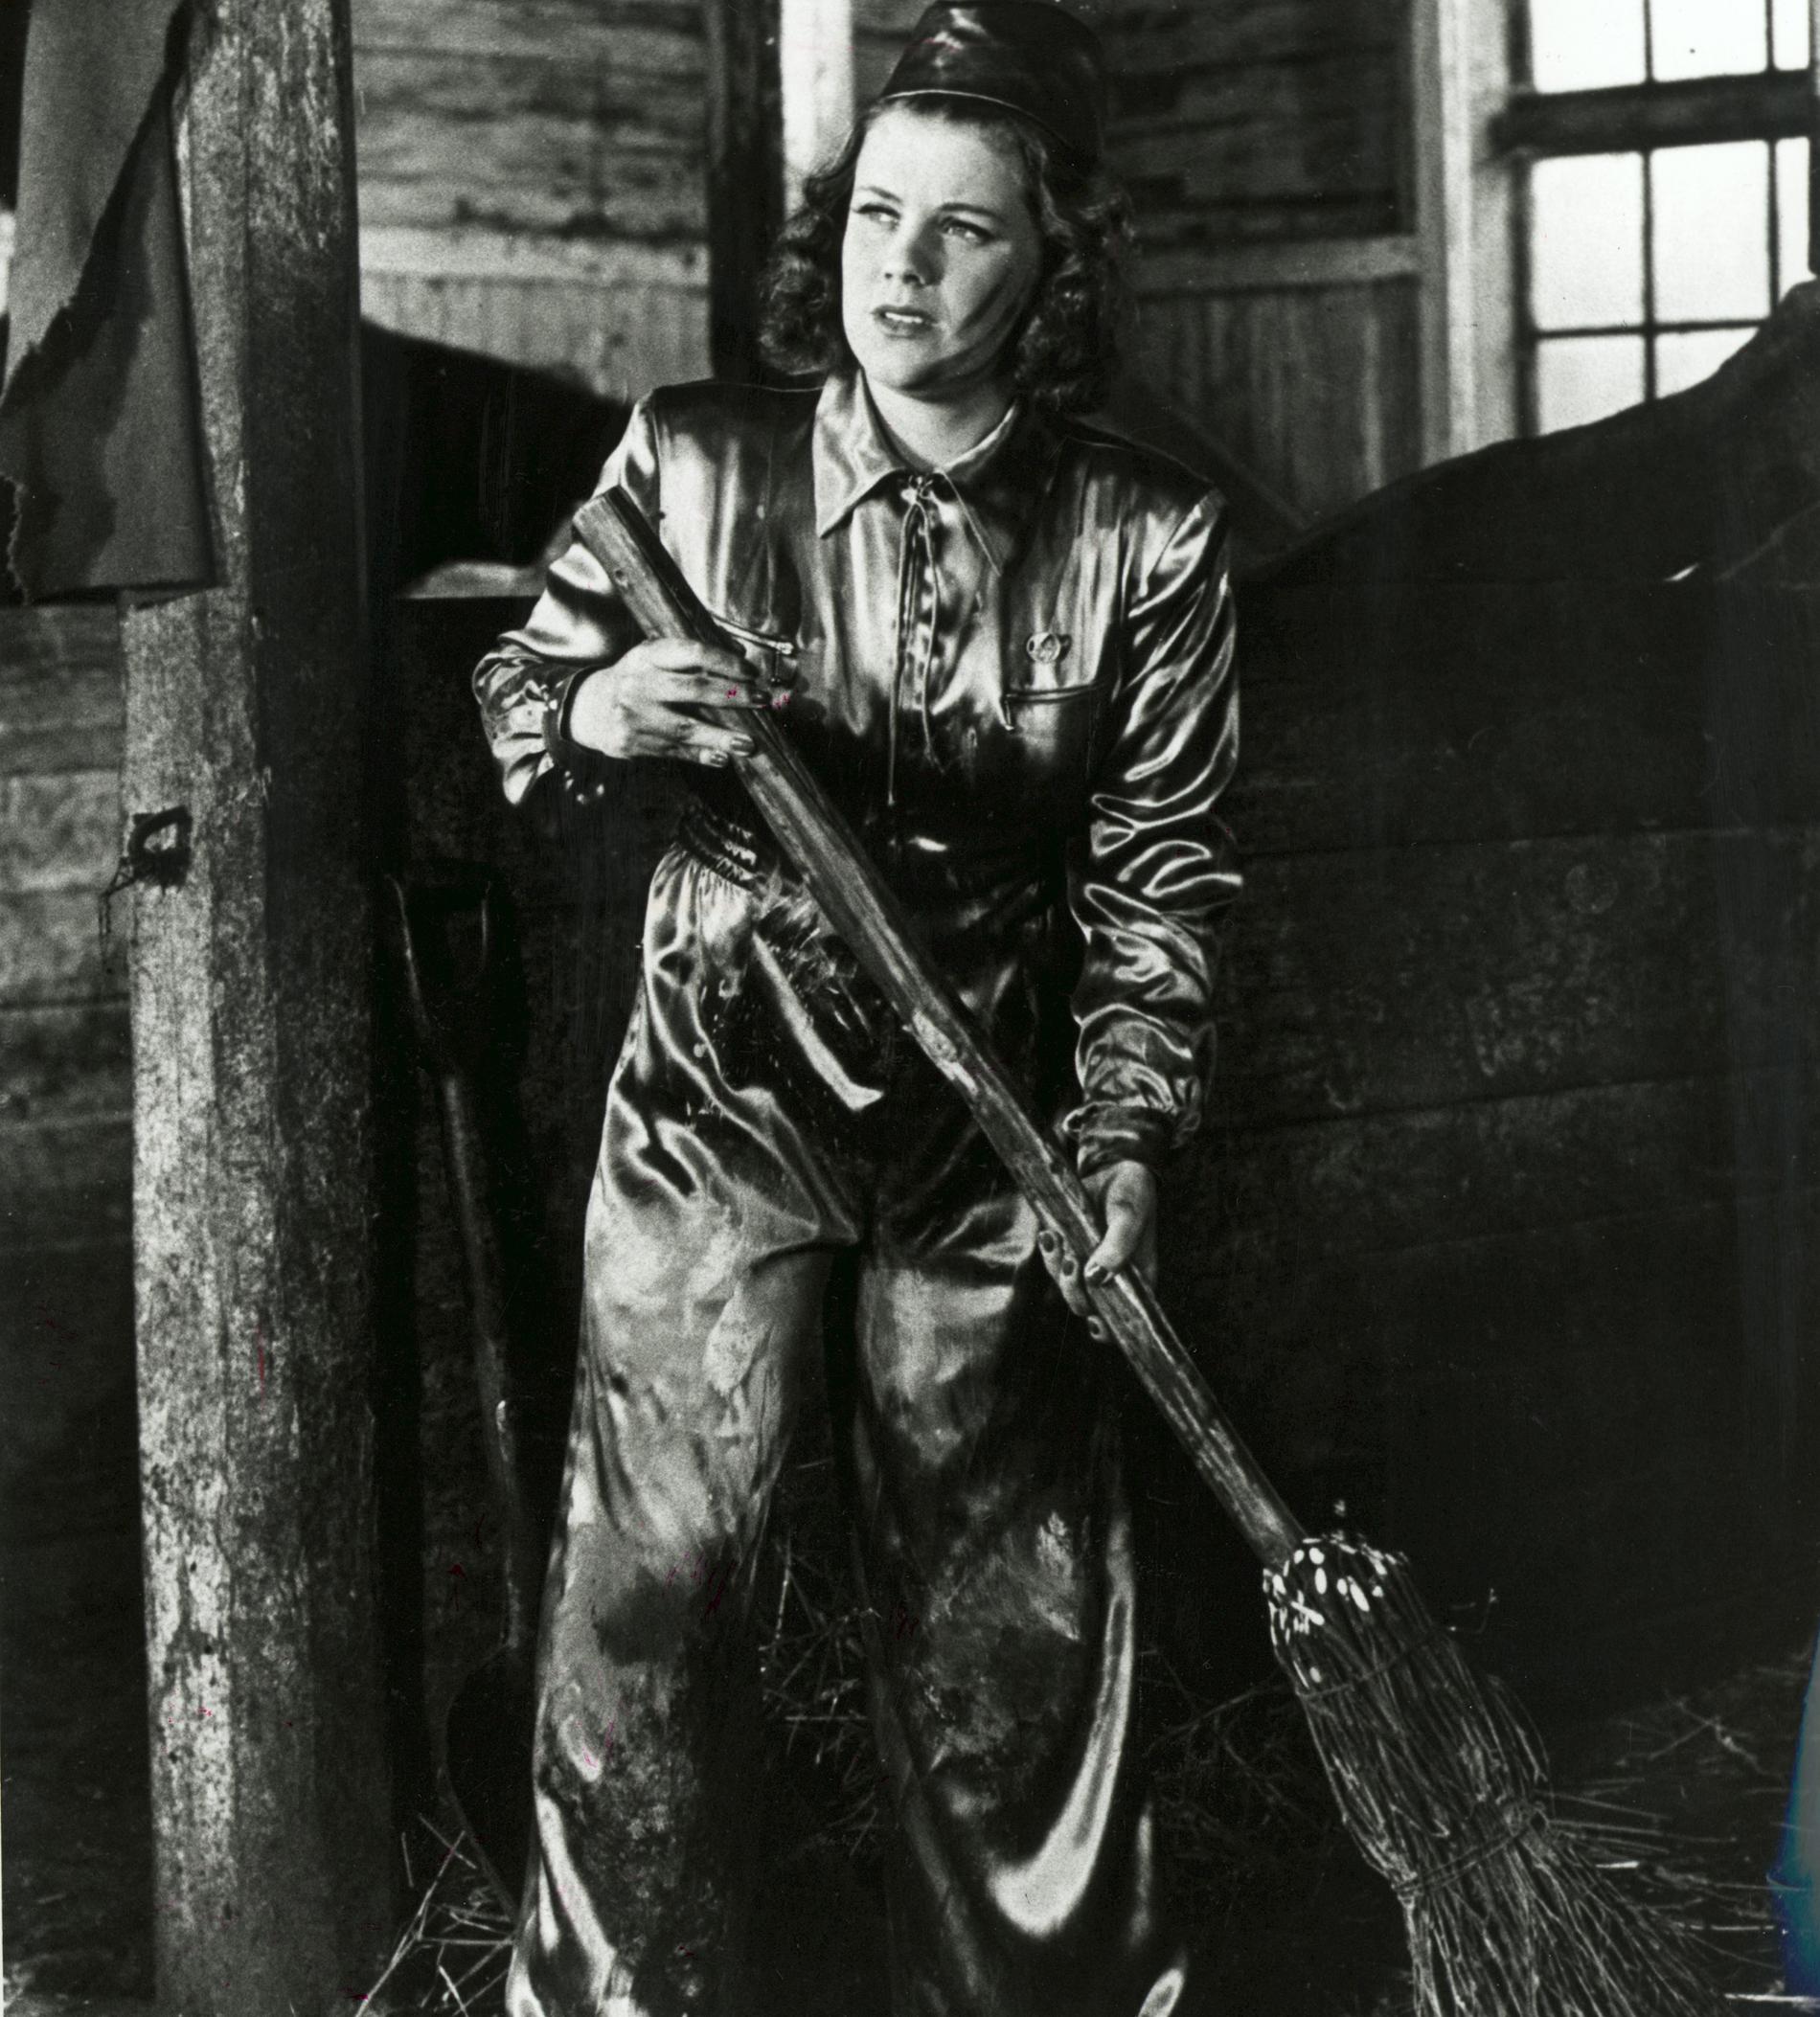 1941 Krigsåret -41 spelade Sickan huvudrollen i komedin ”Landstormens lilla argbigga”, där hon spelade den rika Stockholmstjejen Marianne som tar jobb som beredskapskvinna på landsbygden. En omställning som bäddar för skratt.